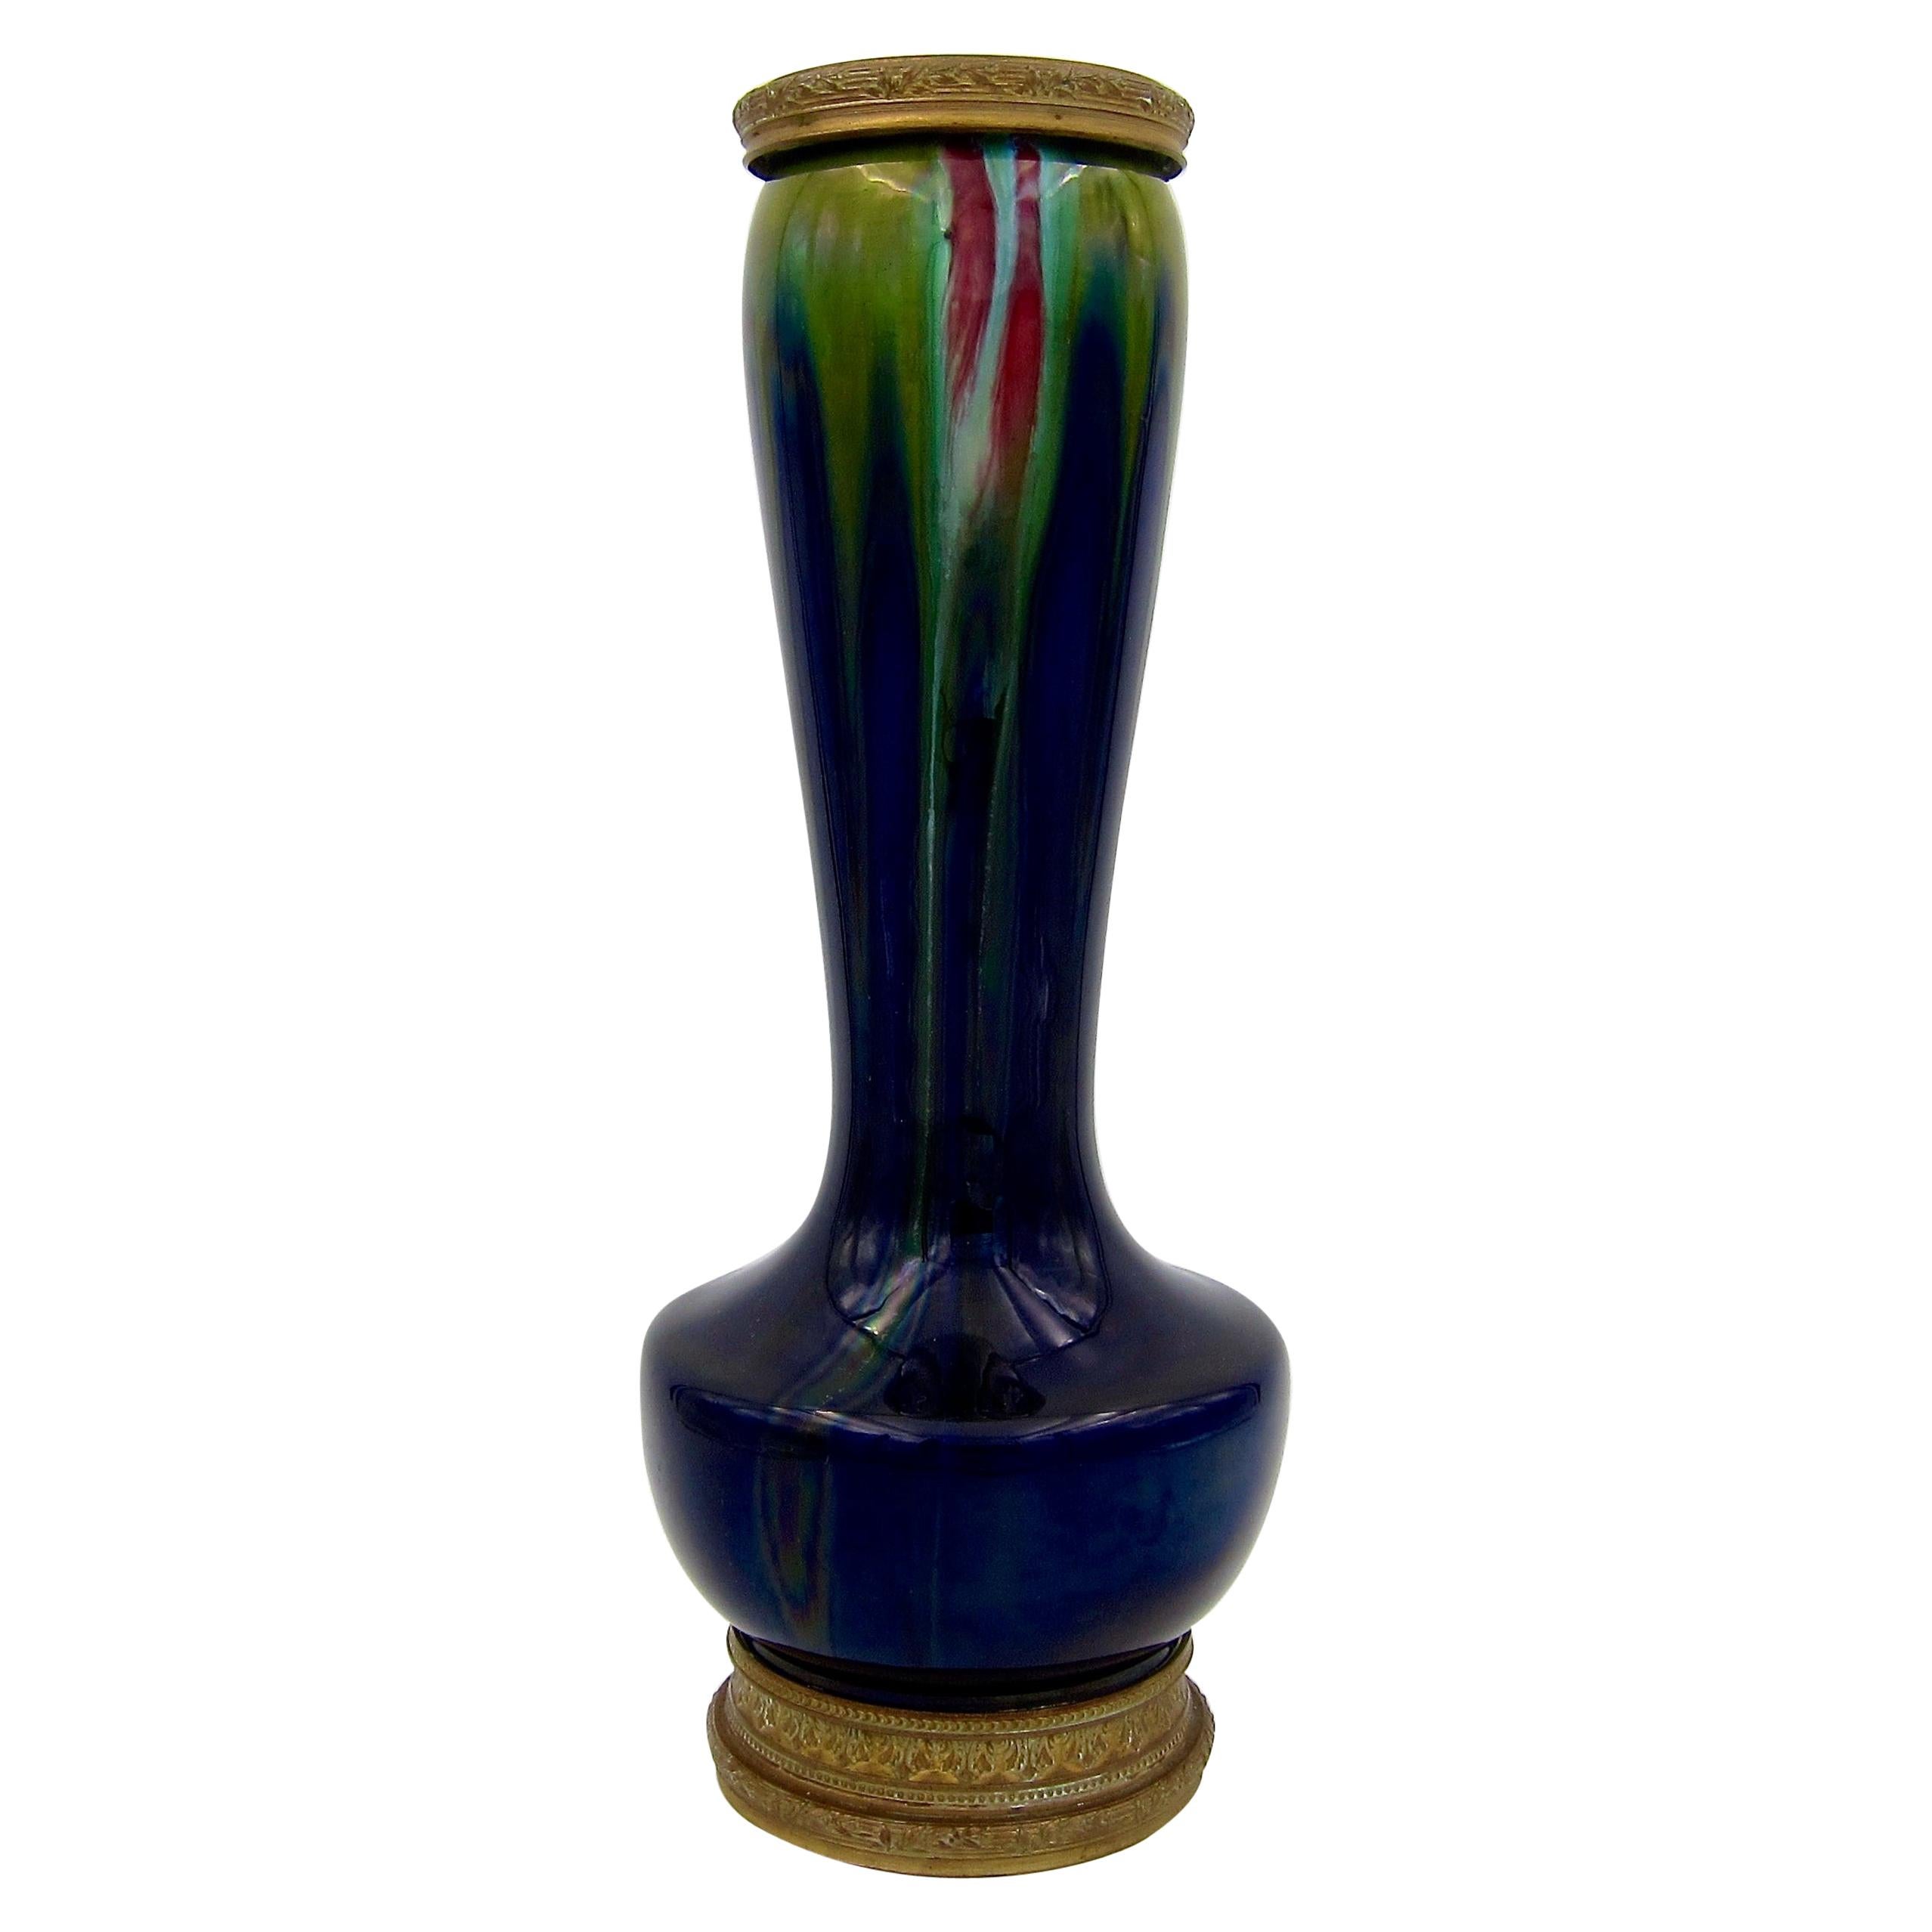 Art Nouveau Faience Vase with Flambe Glaze and Ormolu Mounts